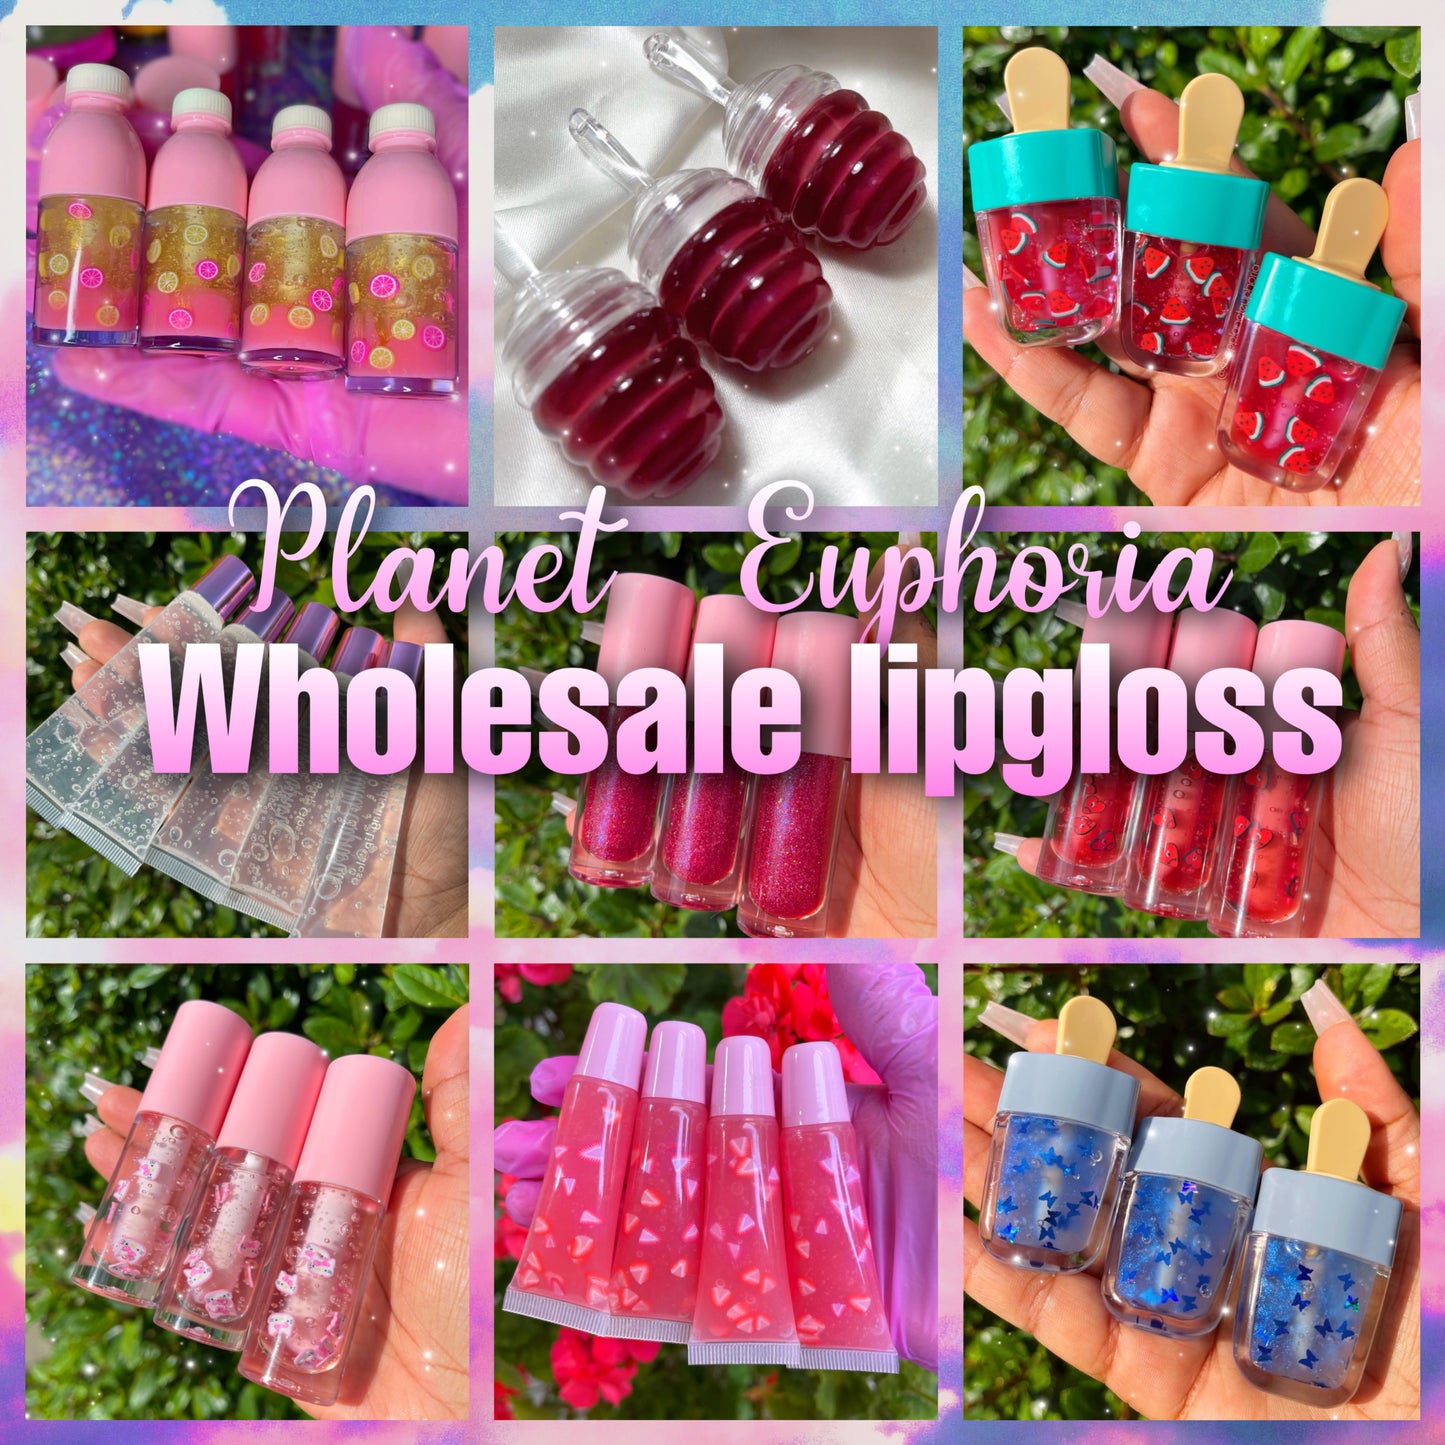 Wholesale LipGlosses